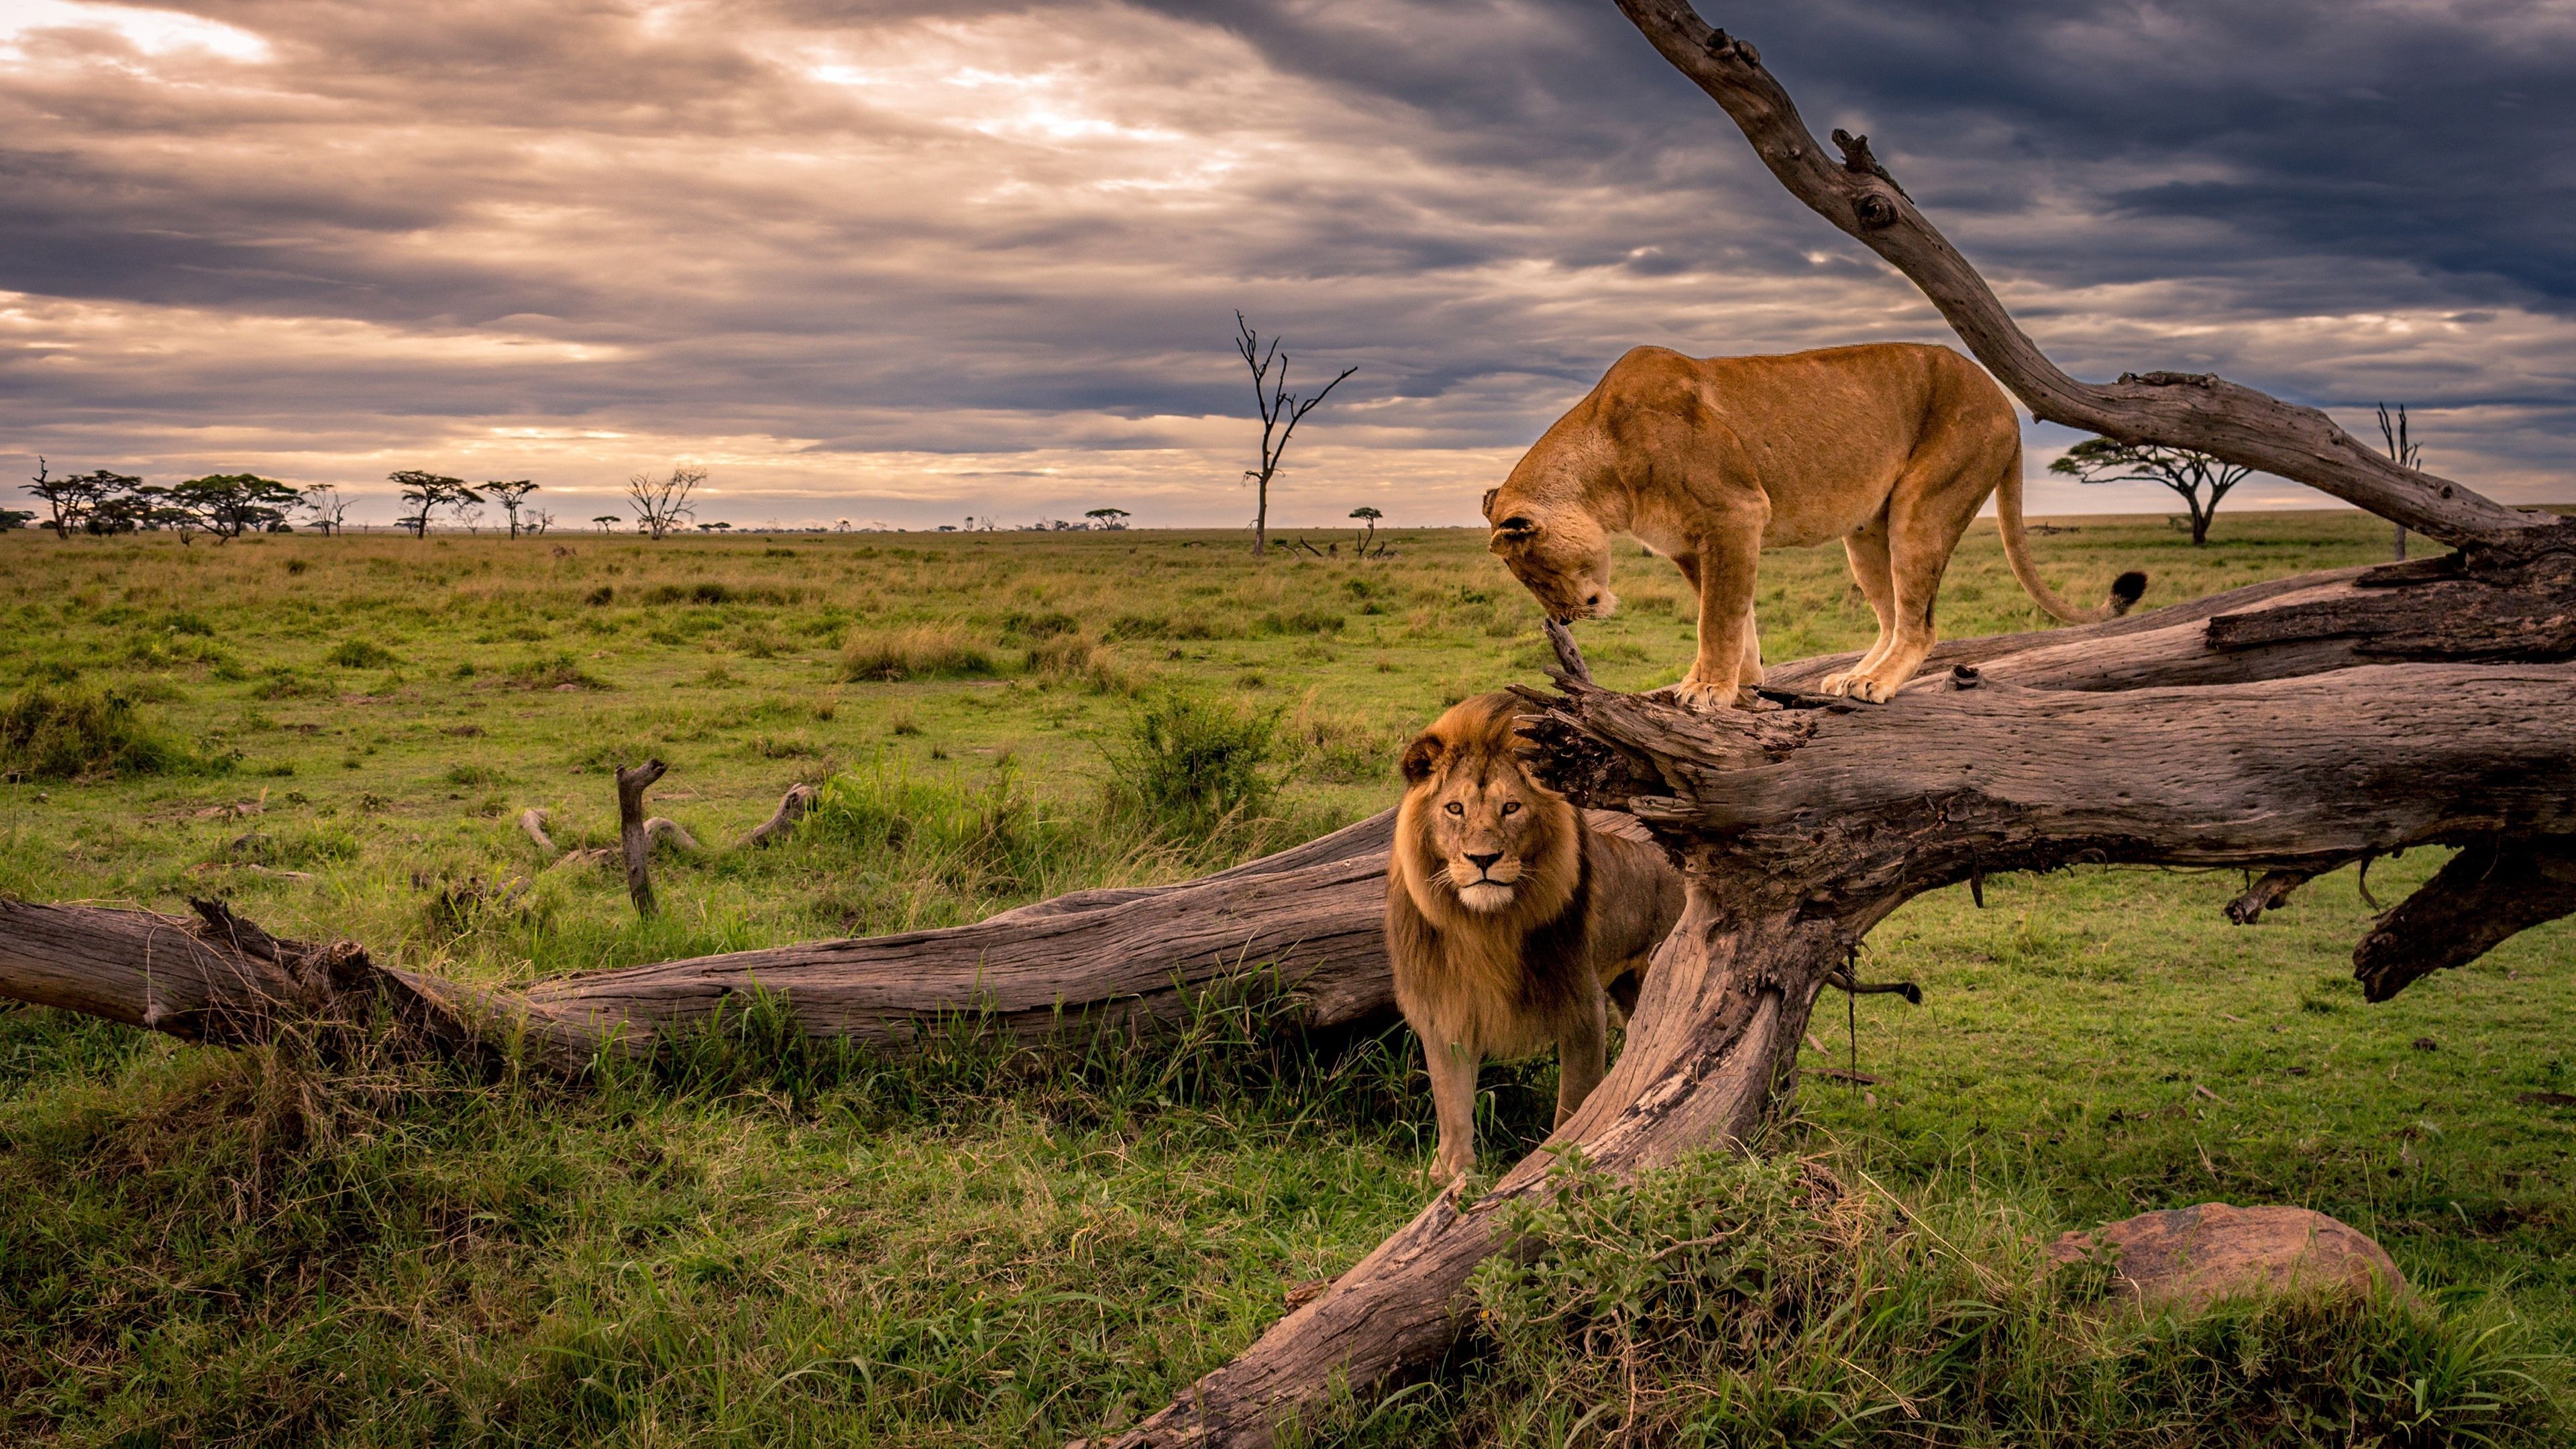  Tiere Hintergrundbild 3840x2160. Löwe und Löwin, Afrika, wild lebende Tiere 3840x2160 UHD 4K Hintergrundbilder, HD, Bild